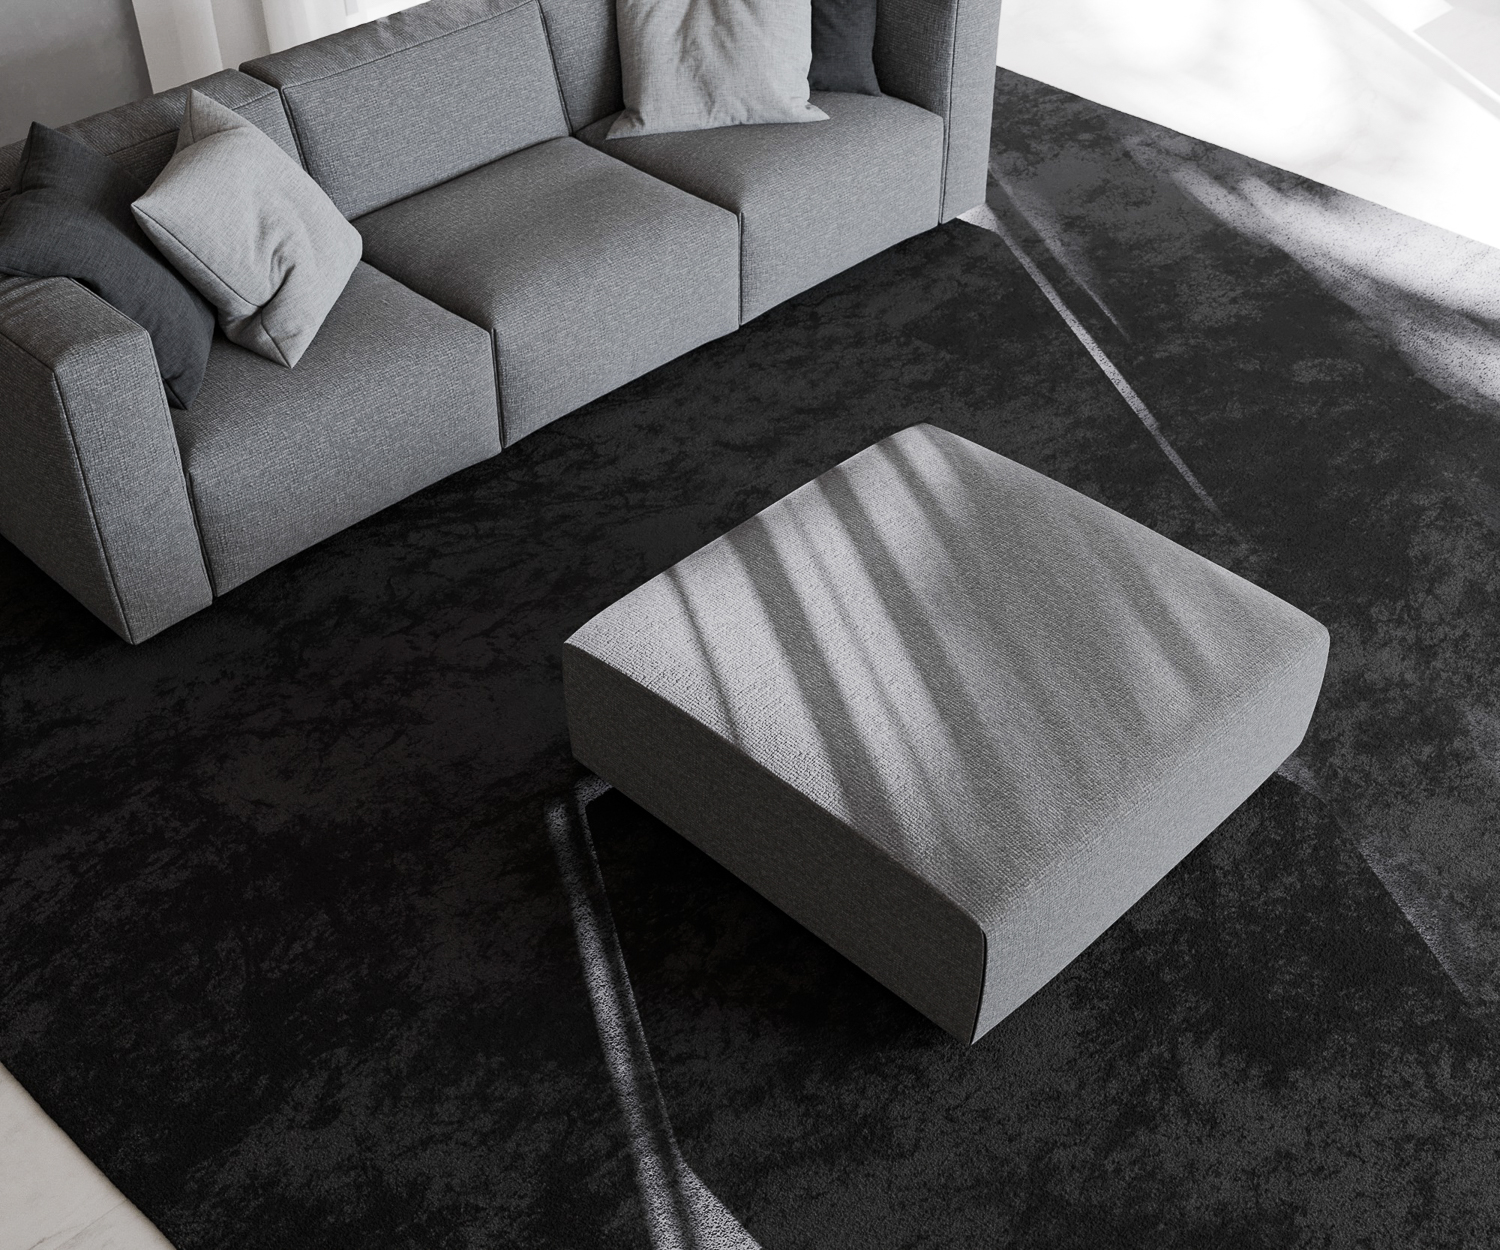 Tabouret design Match Prosoria d'en haut housse grise confortable mobilier de salon pour salon surface rectangulaire Pouf